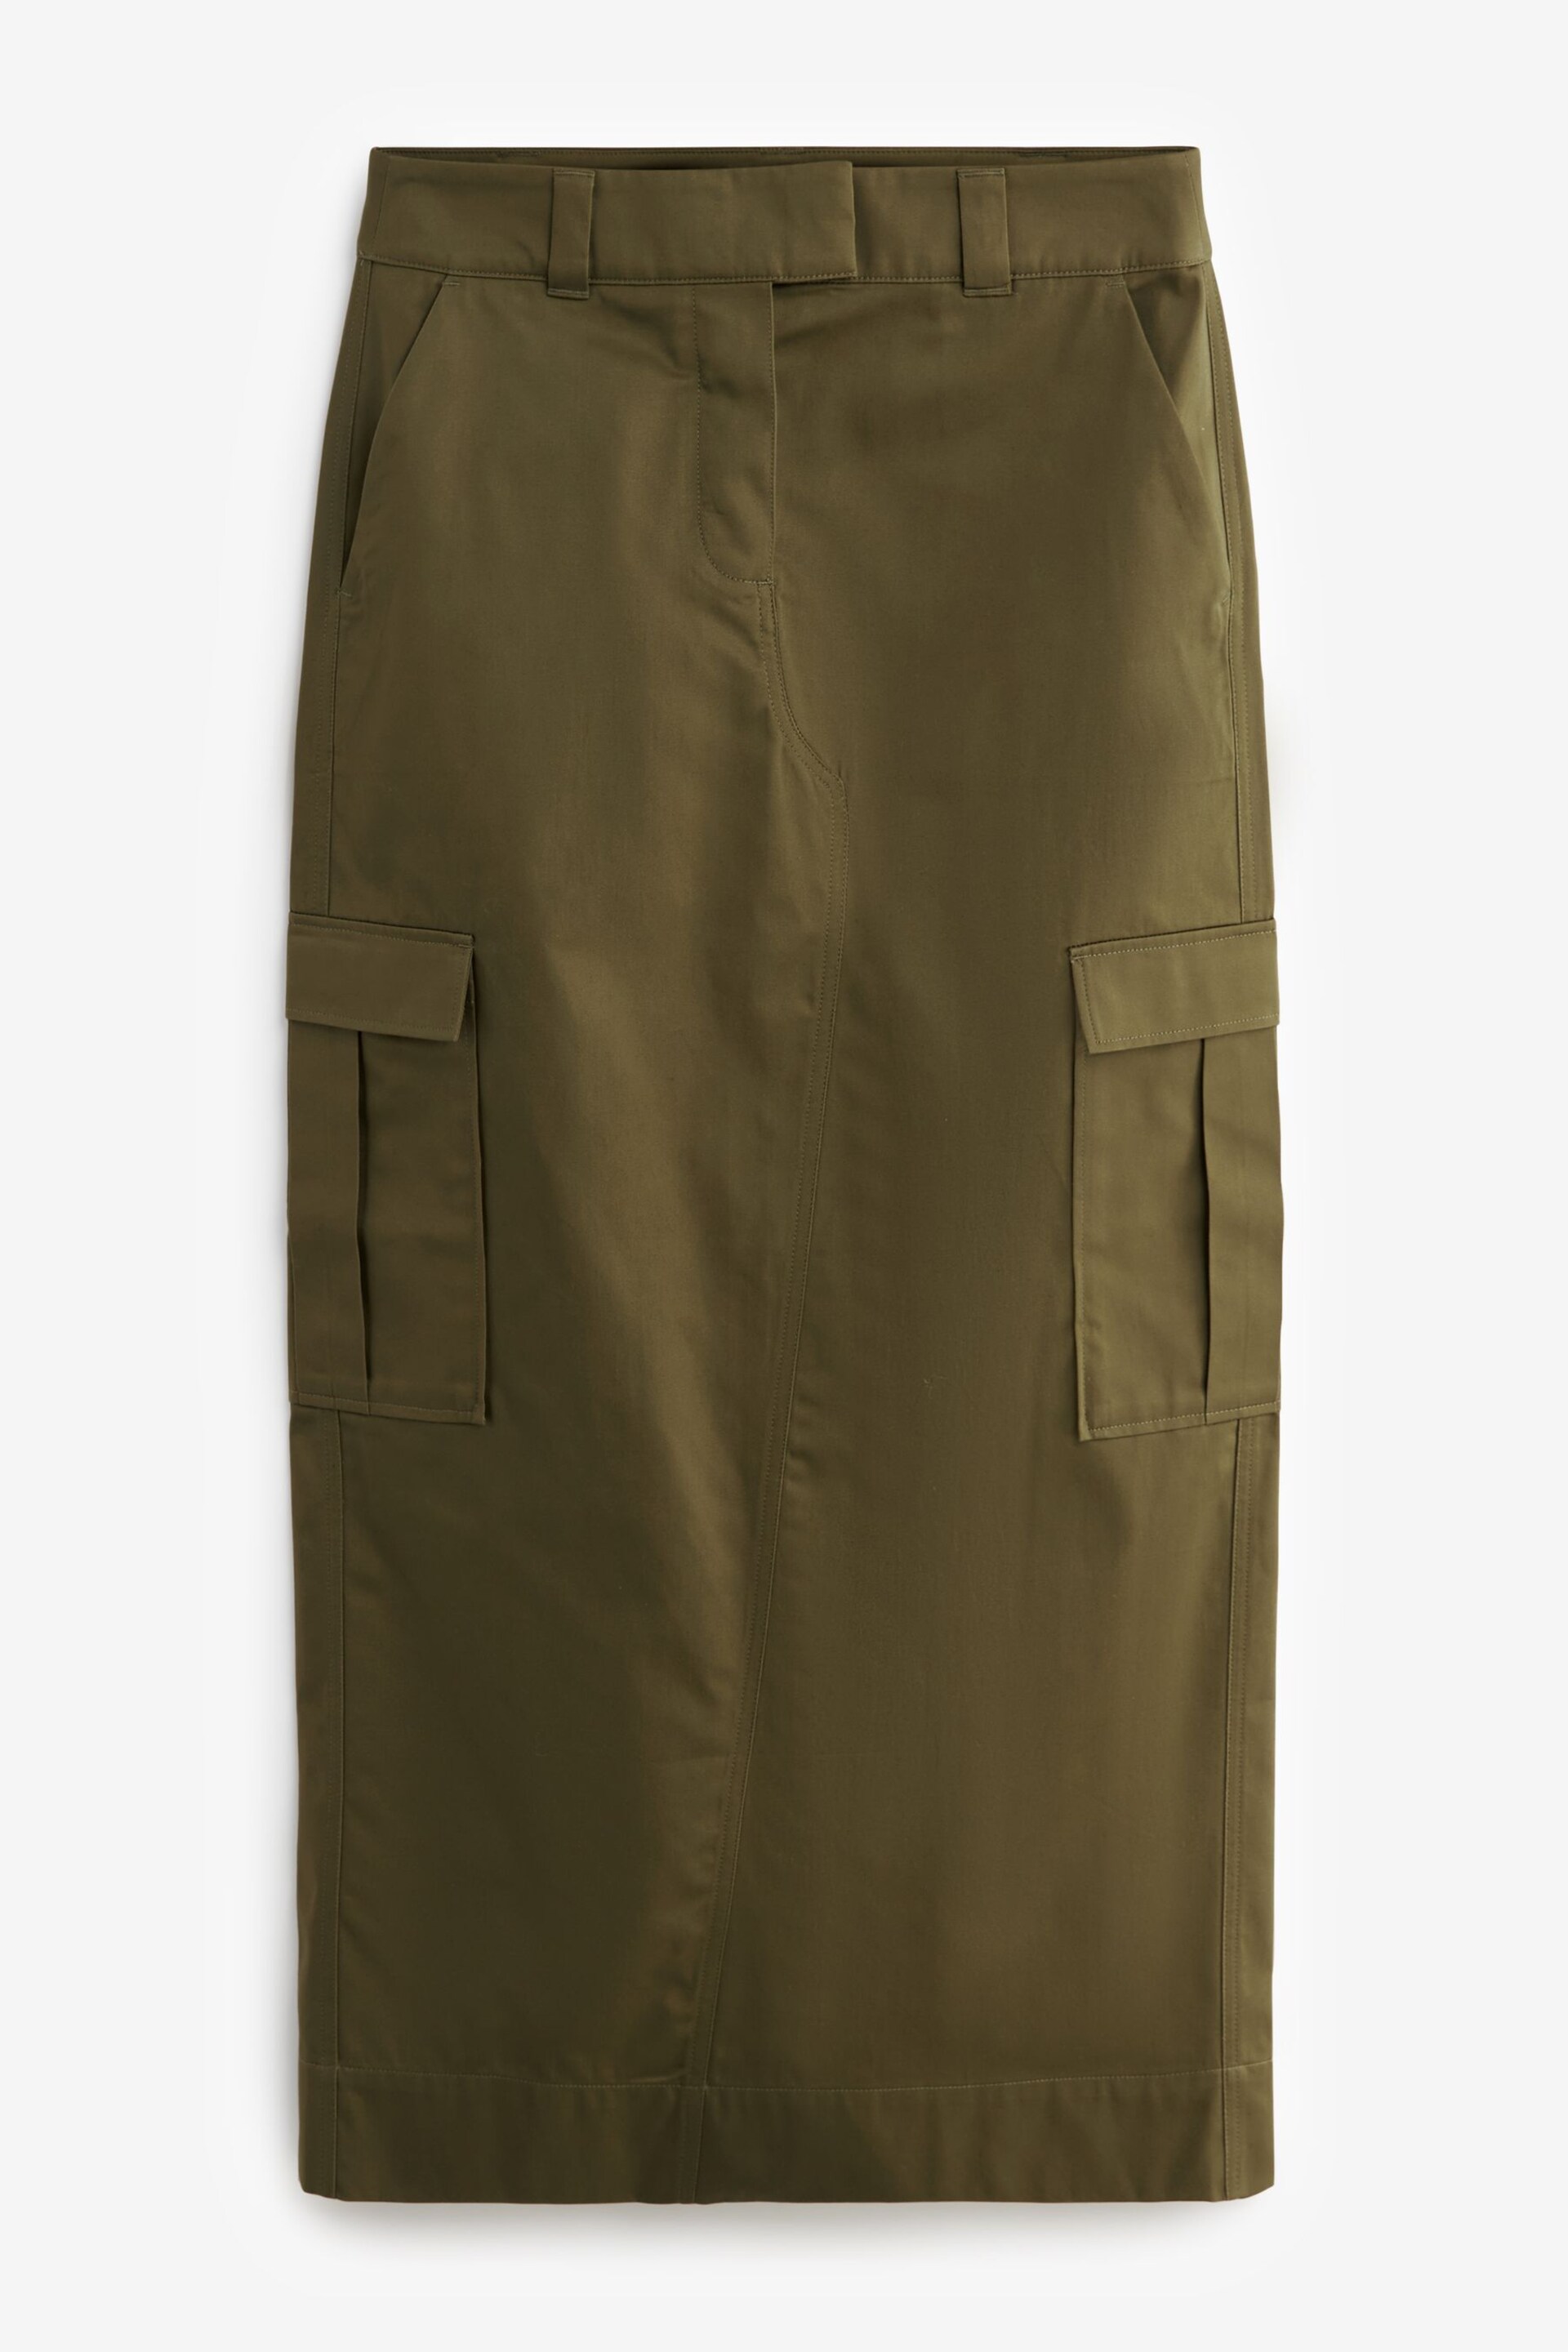 Khaki Green Utility Midi Skirt - Image 1 of 2